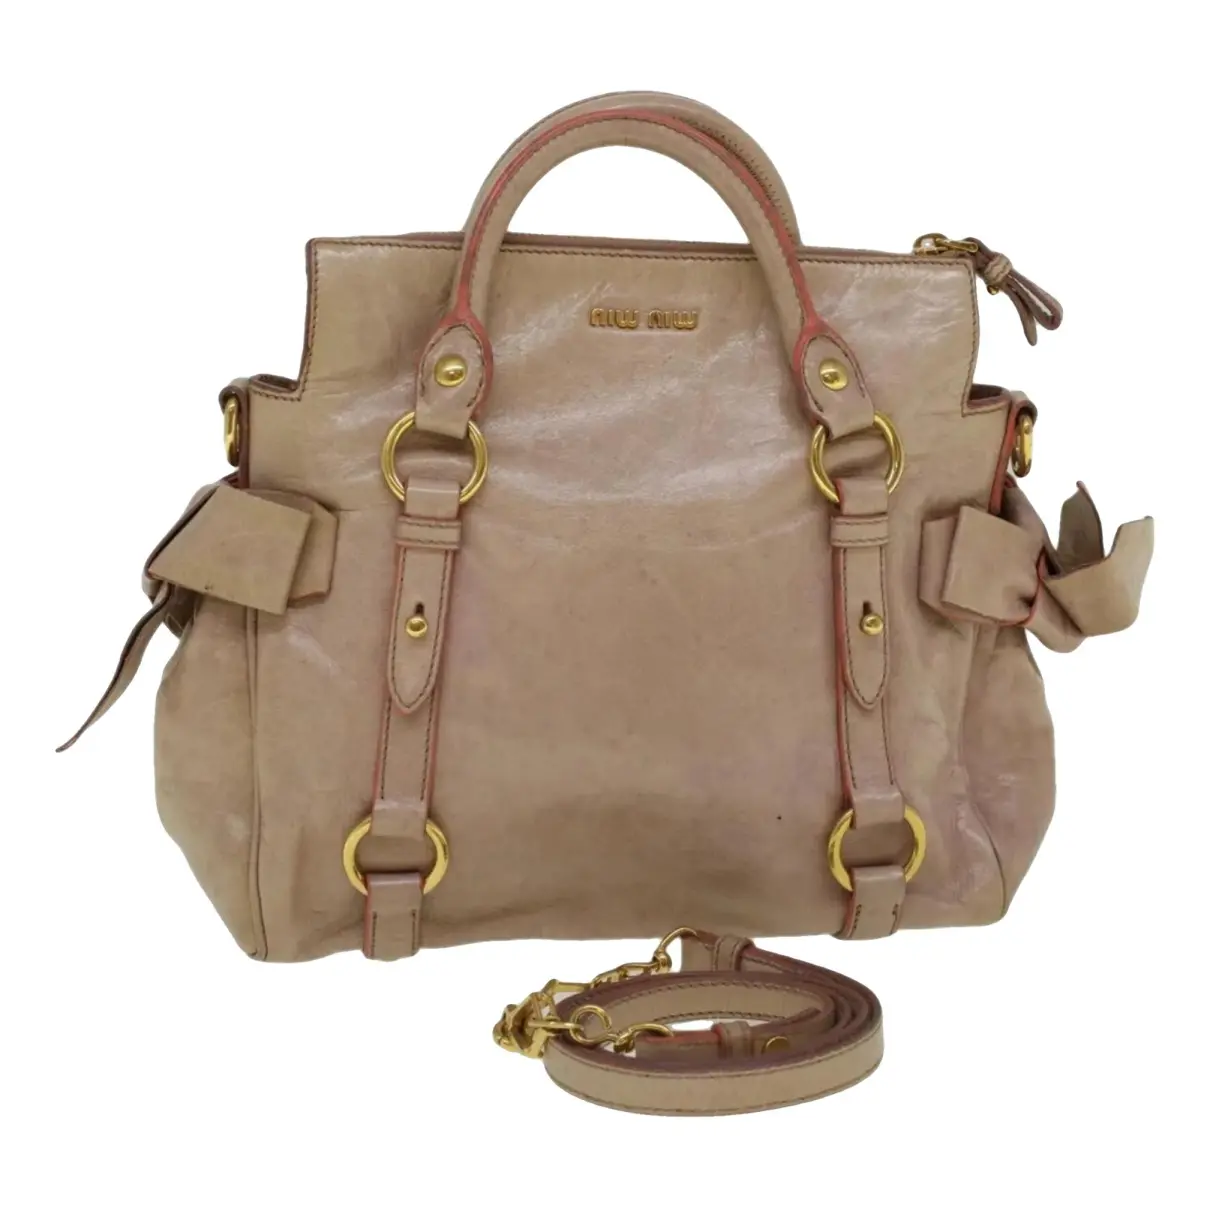 Bow bag leather handbag